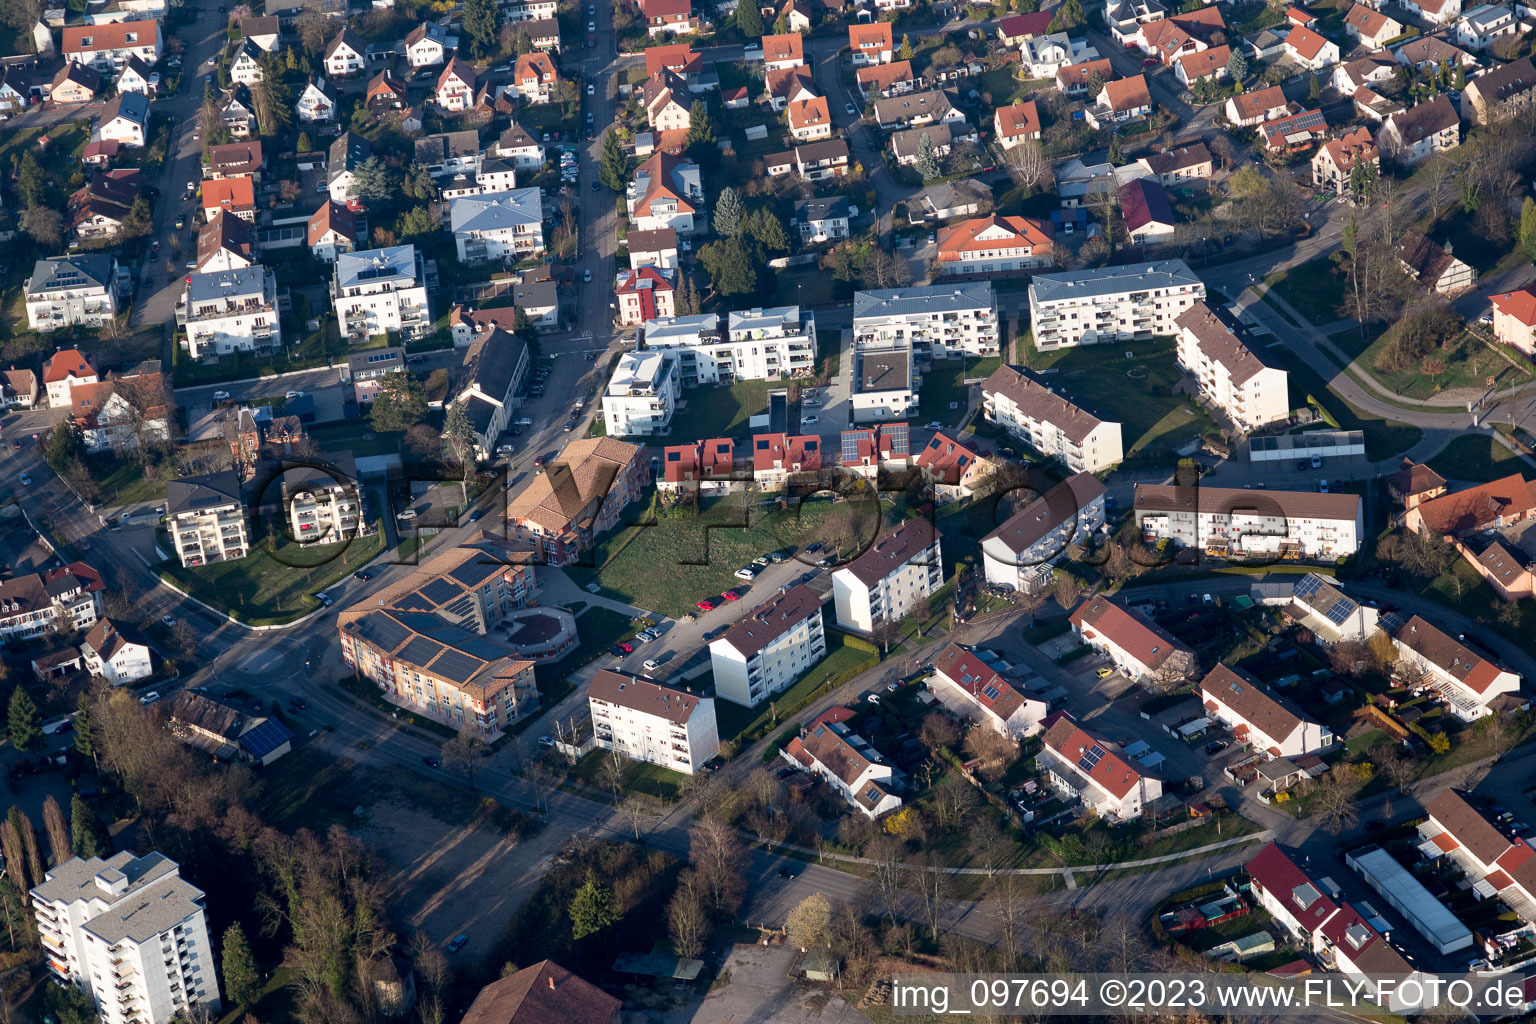 Vue aérienne de Maison de retraite Villa Antika à Achern dans le département Bade-Wurtemberg, Allemagne